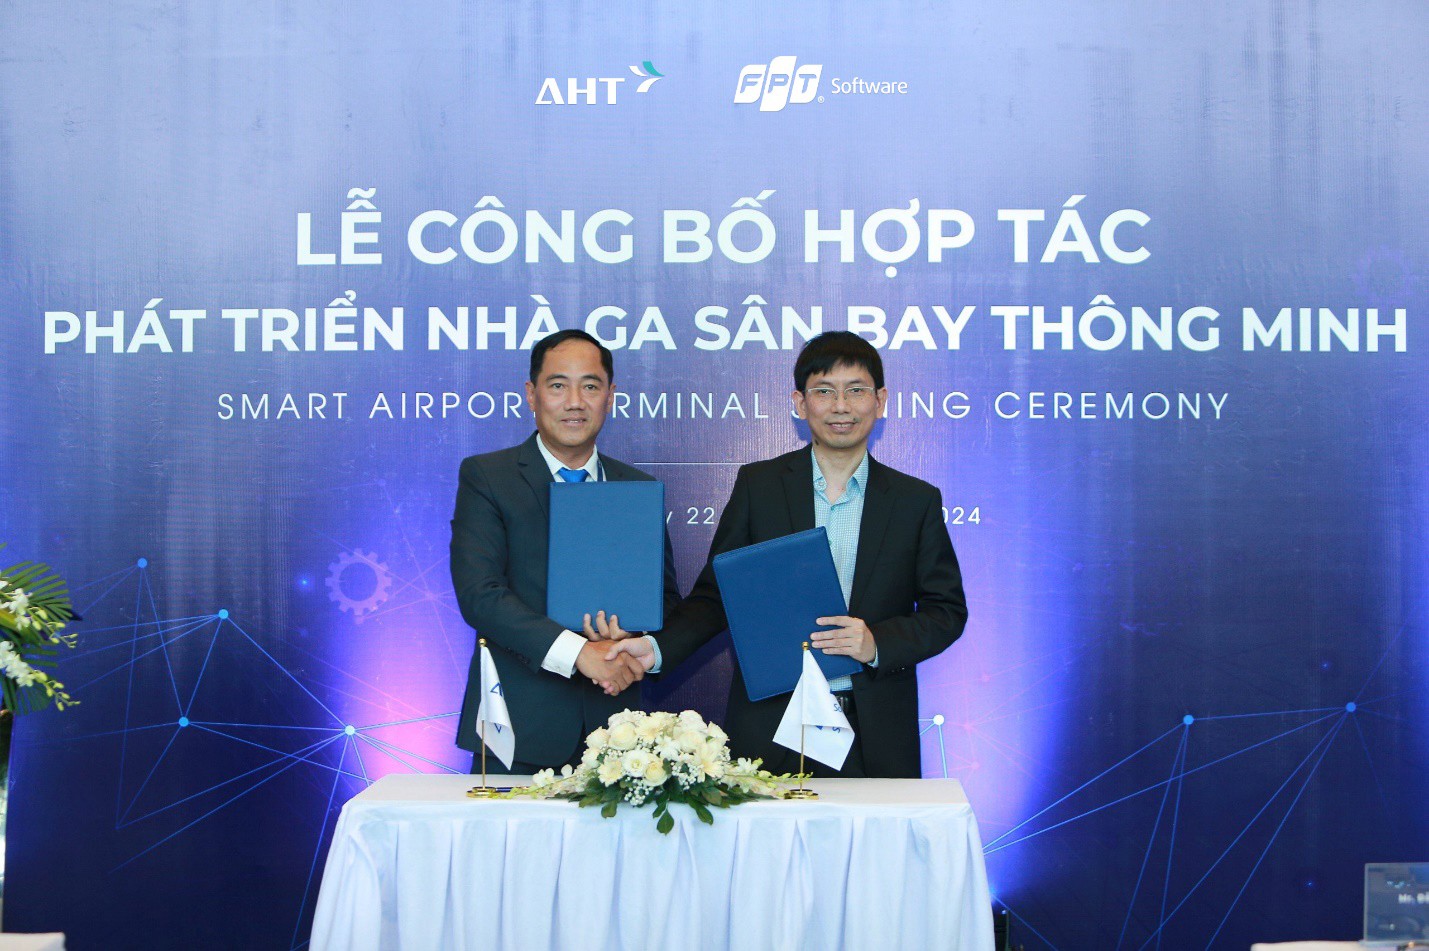 Nhà ga quốc tế Đà Nẵng và FPT Software ký kết hợp tác. Ảnh: AHT